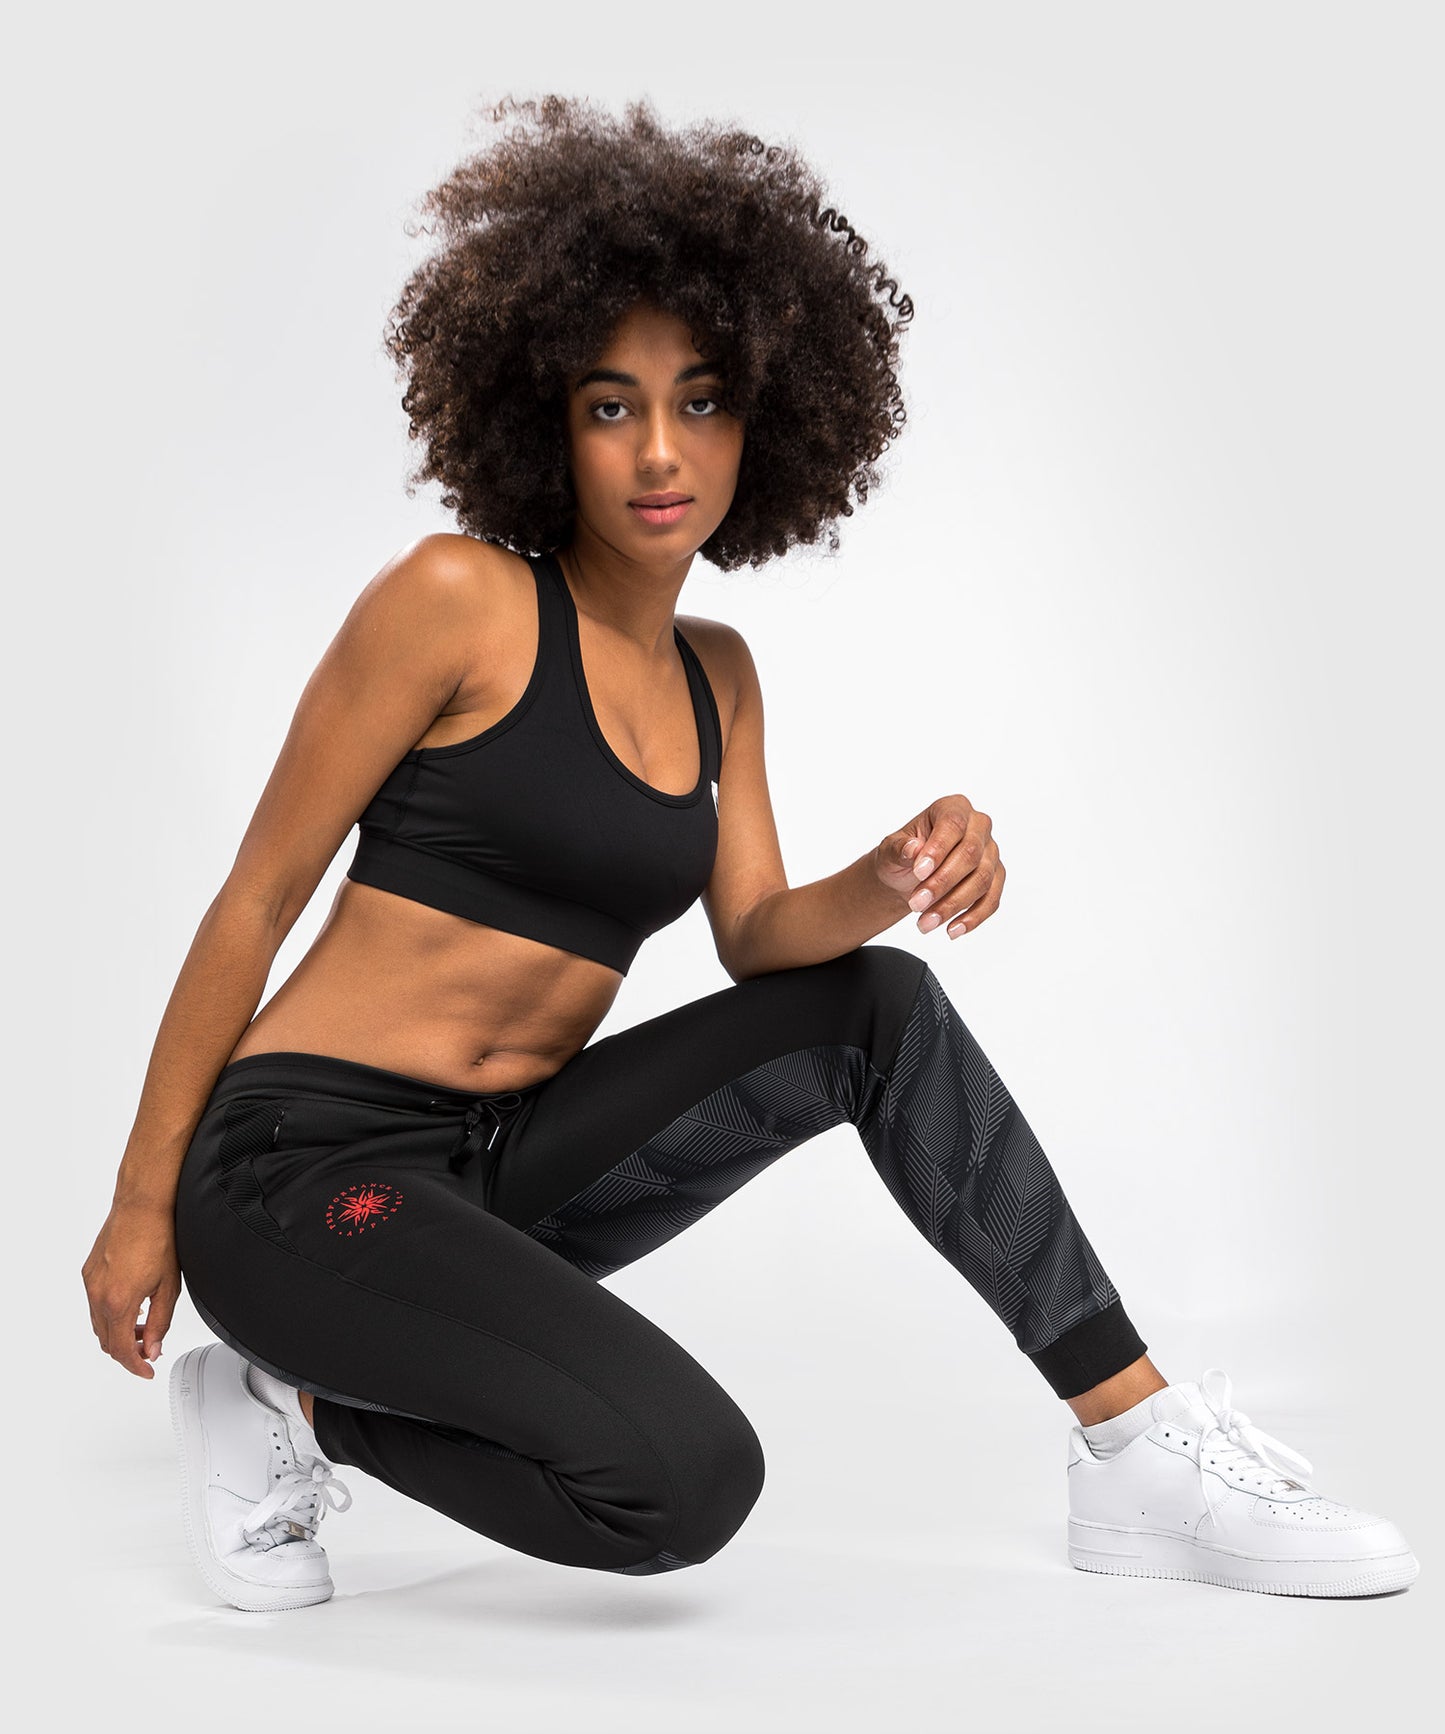 Venum Phantom joggingbroek - Voor vrouwen - zwart/rood